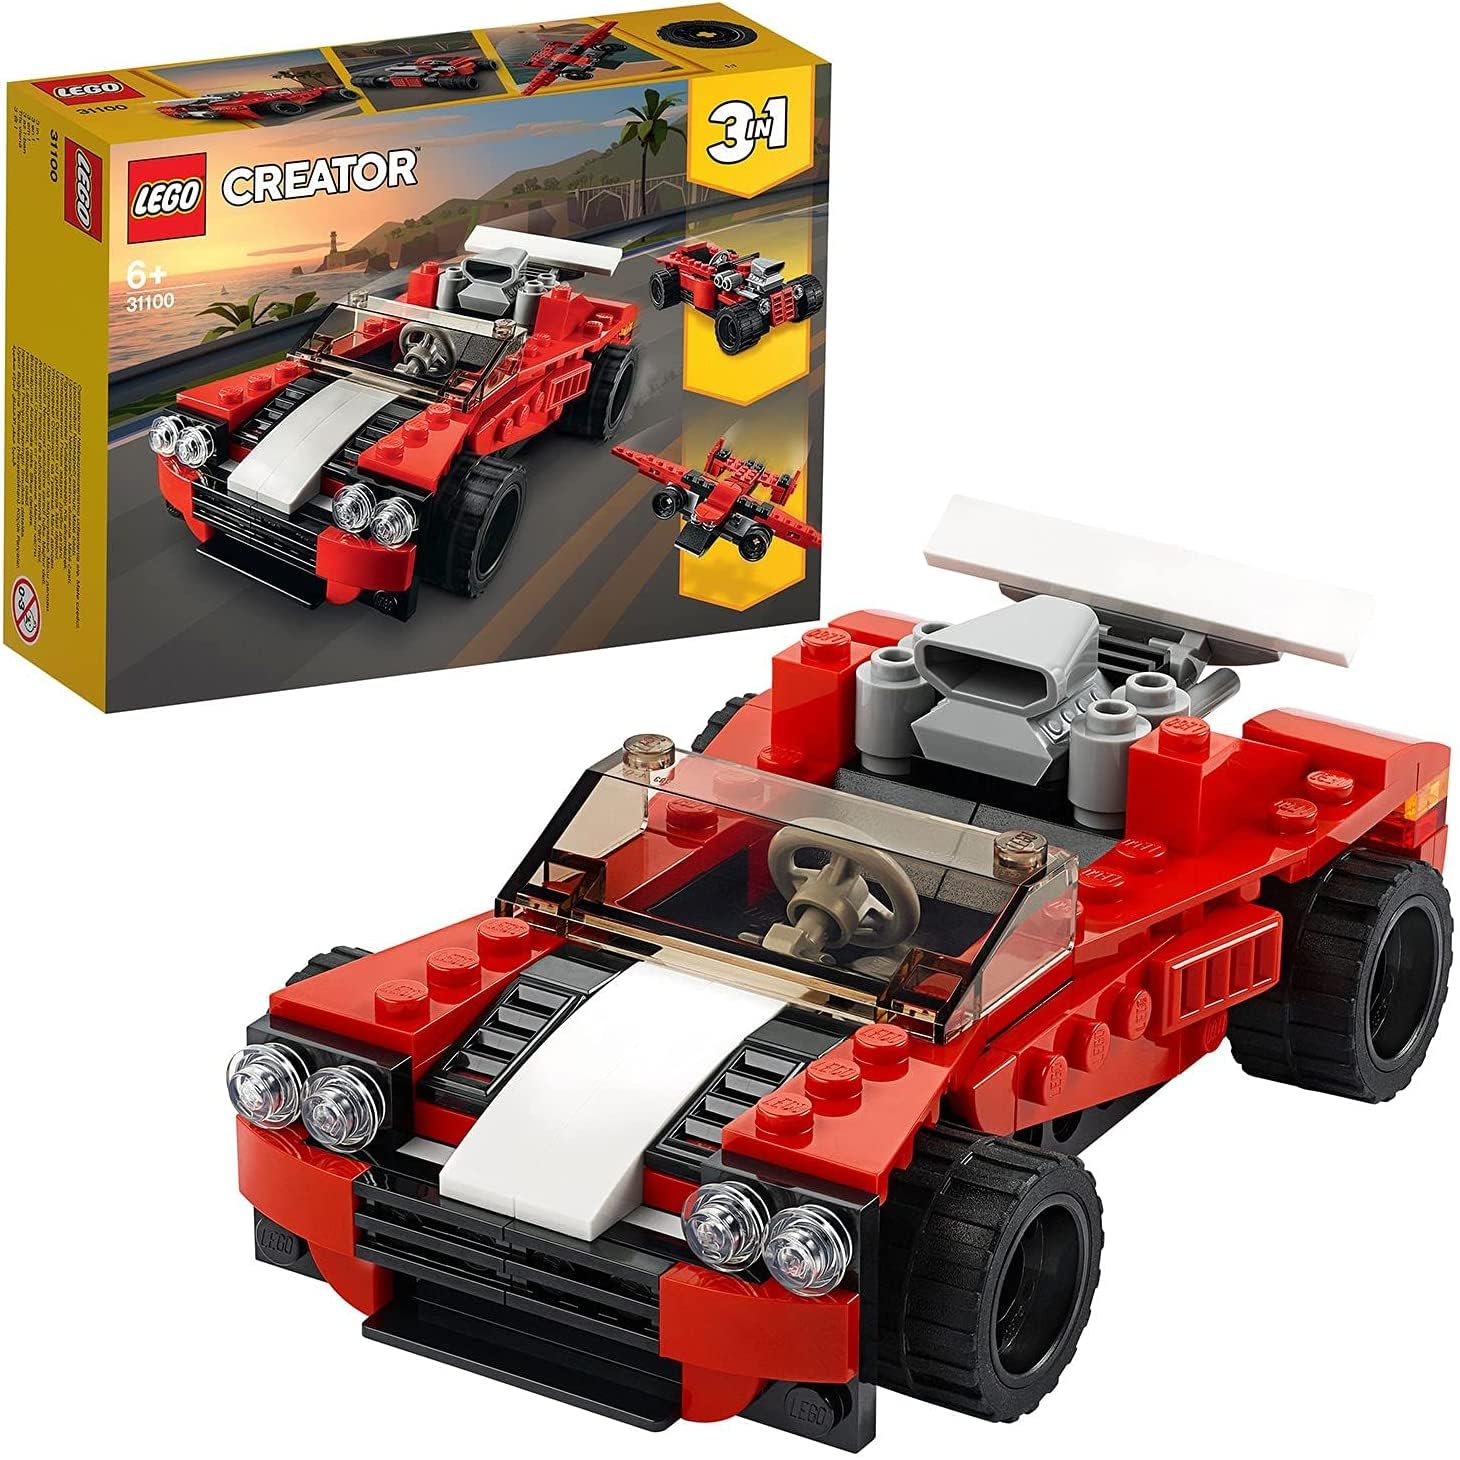 LEGO® Creator 3-in-1 31100 Sportwagen von LEGO